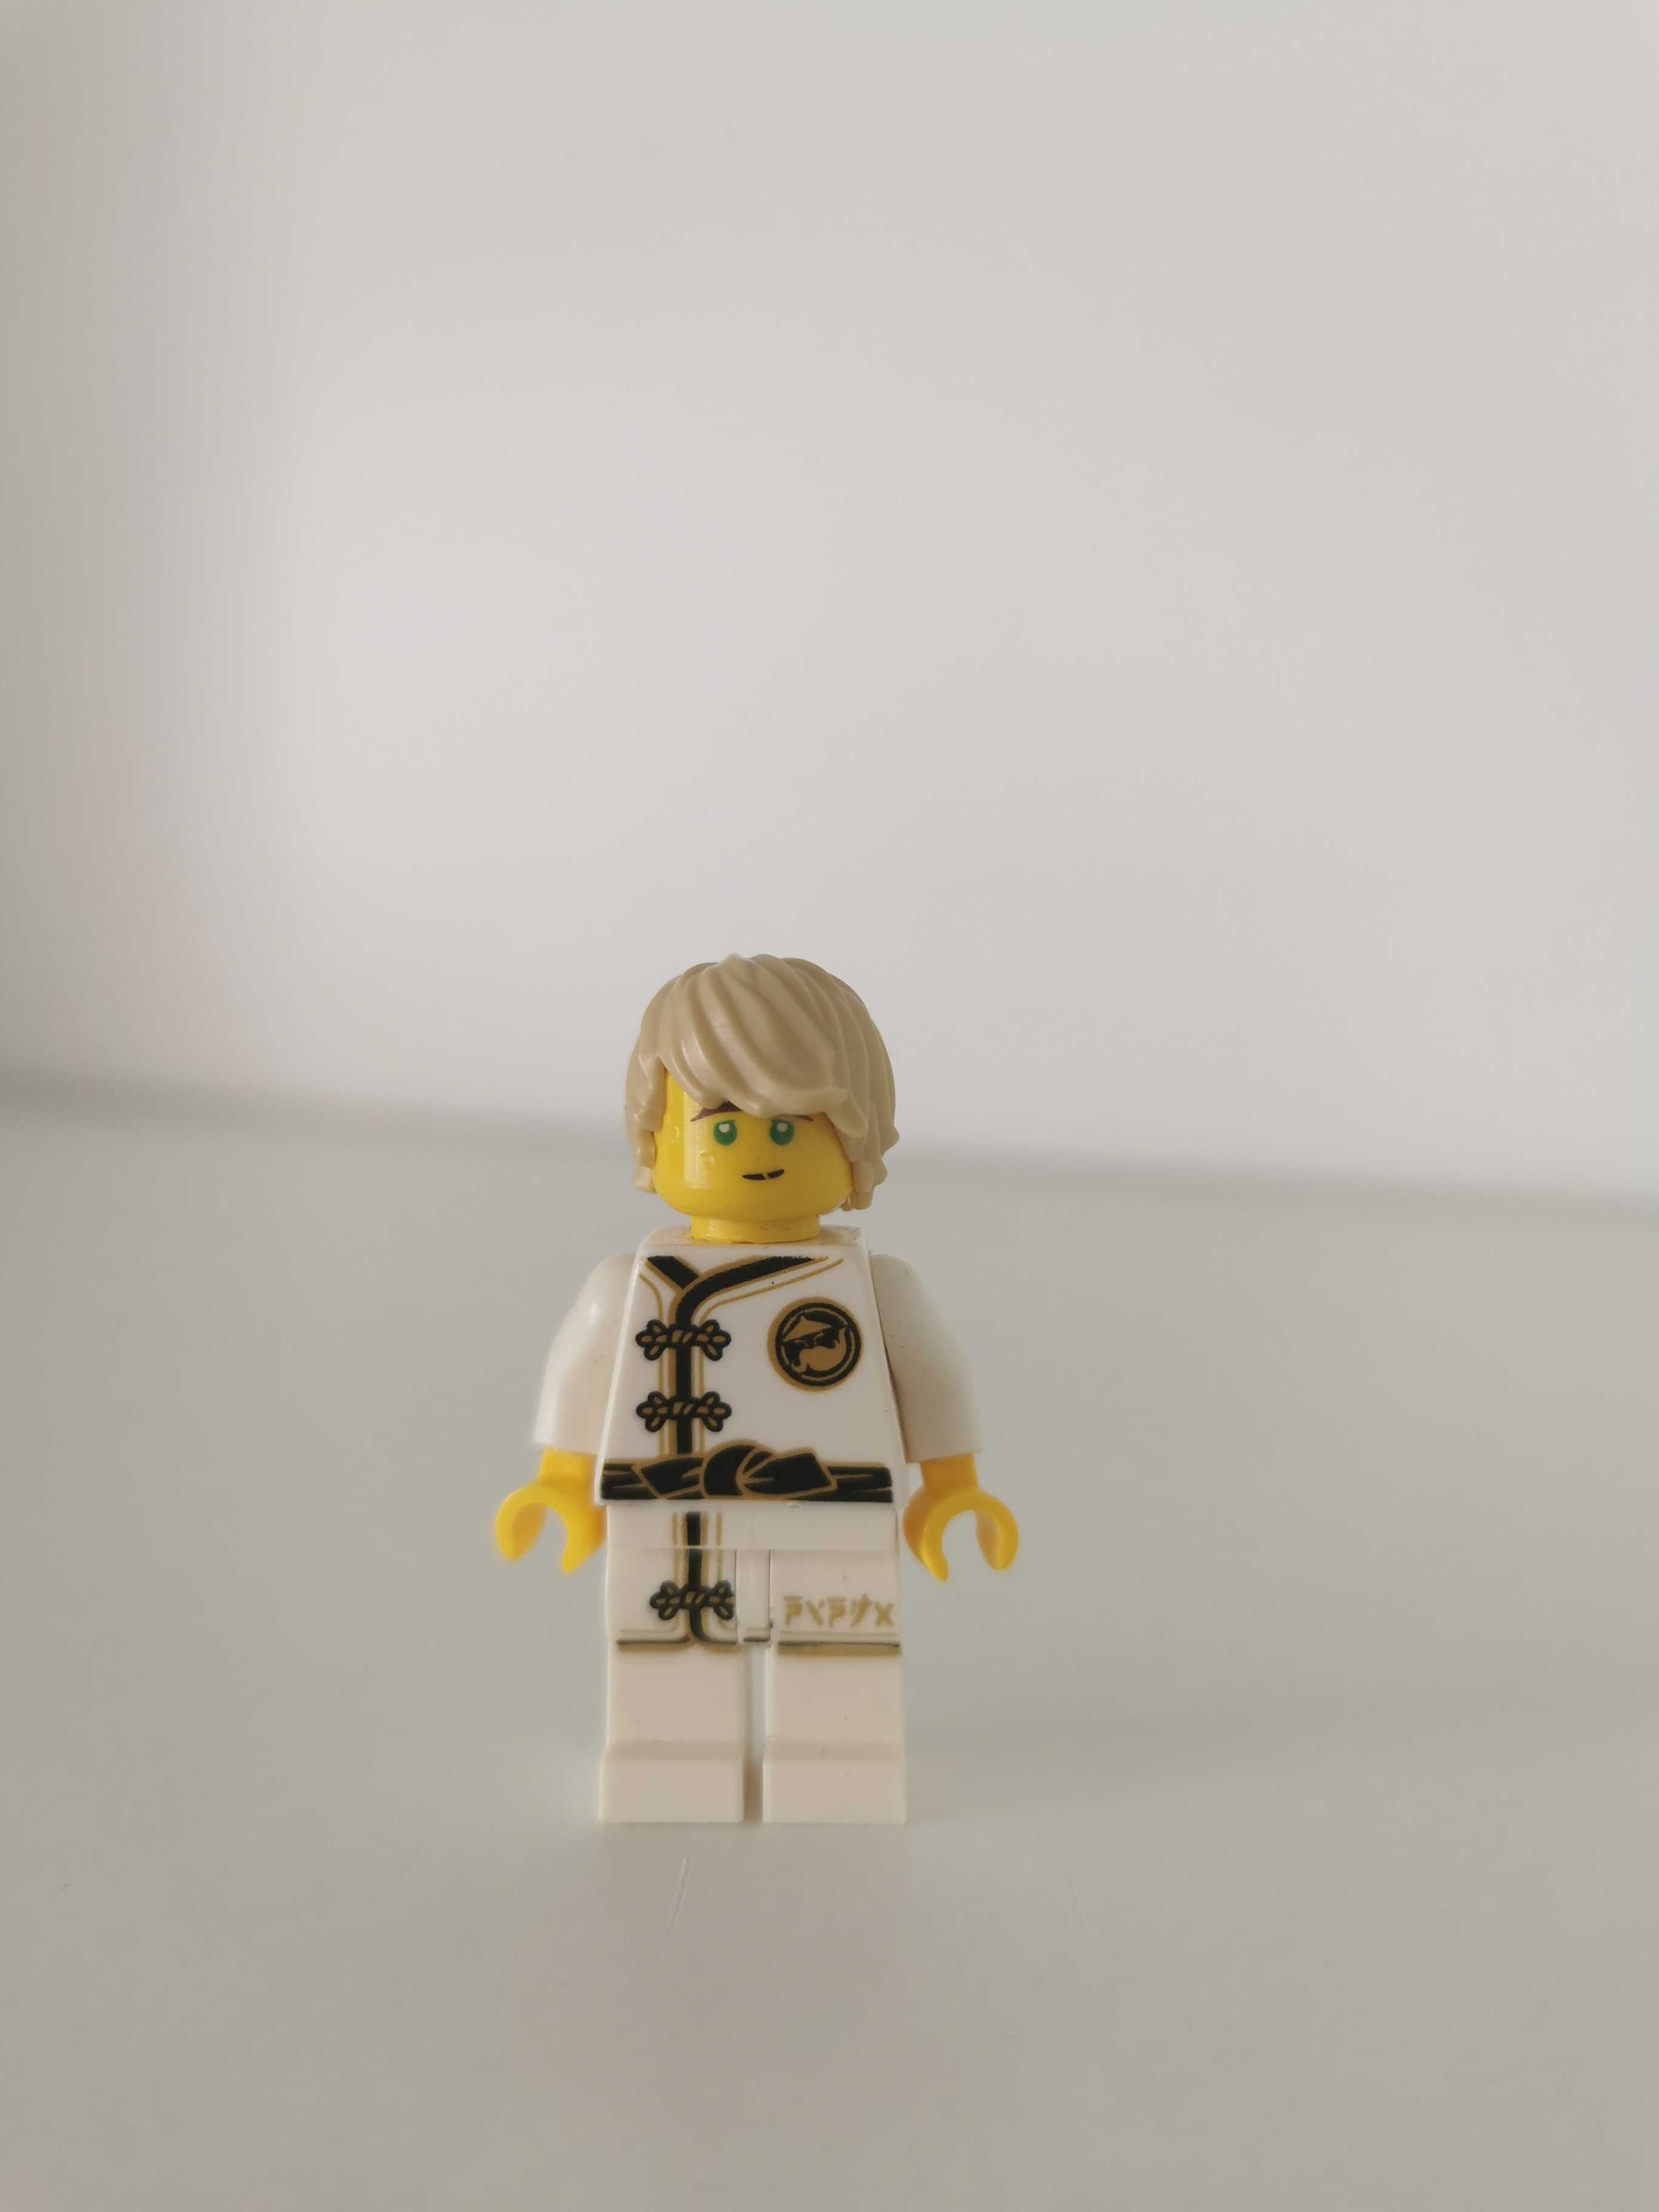 Lego Minifigures Ninjago
njo429